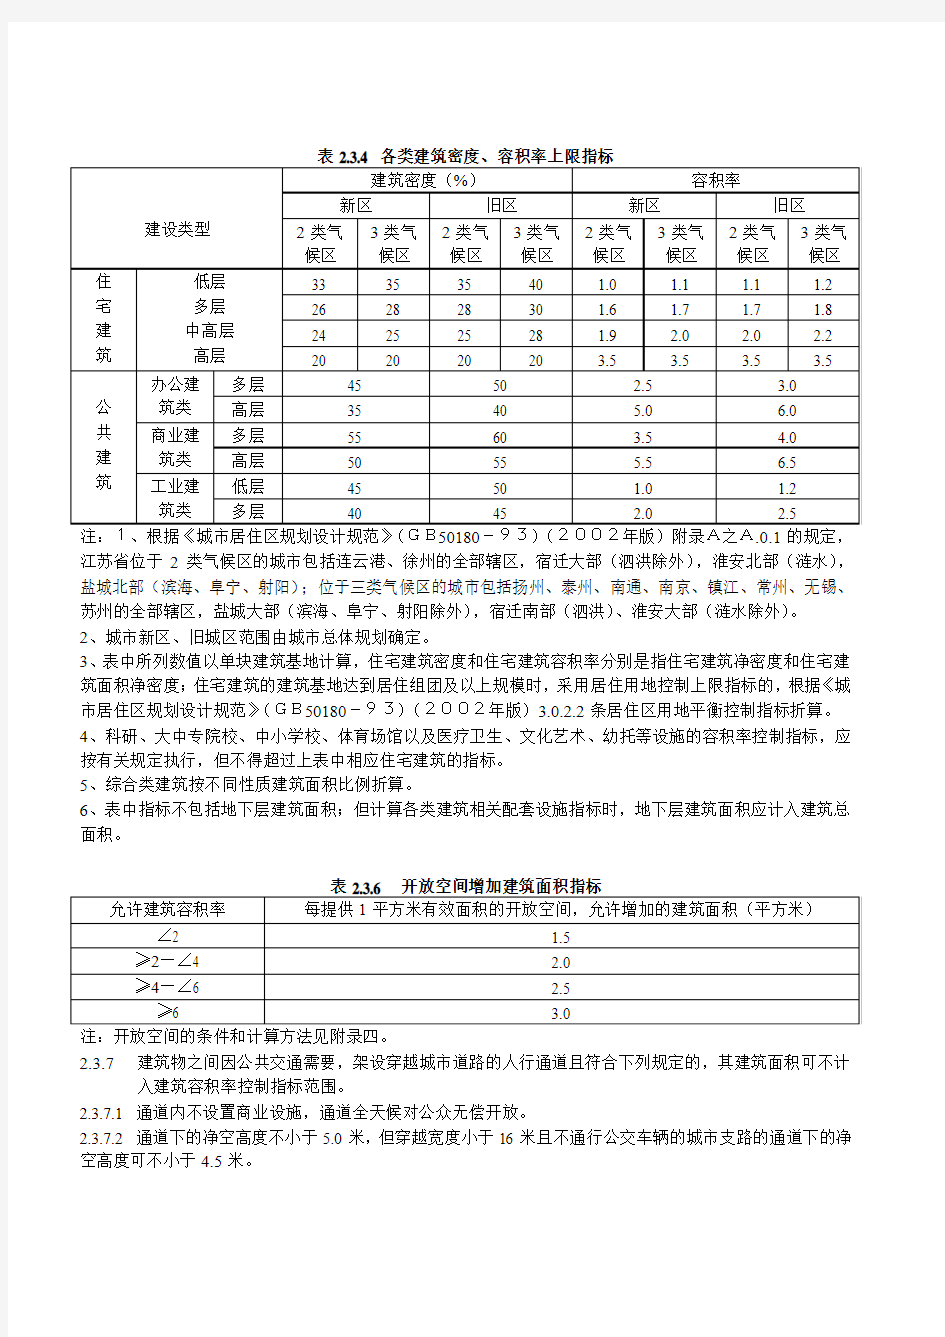 江苏省城市规划管理技术规定2004版